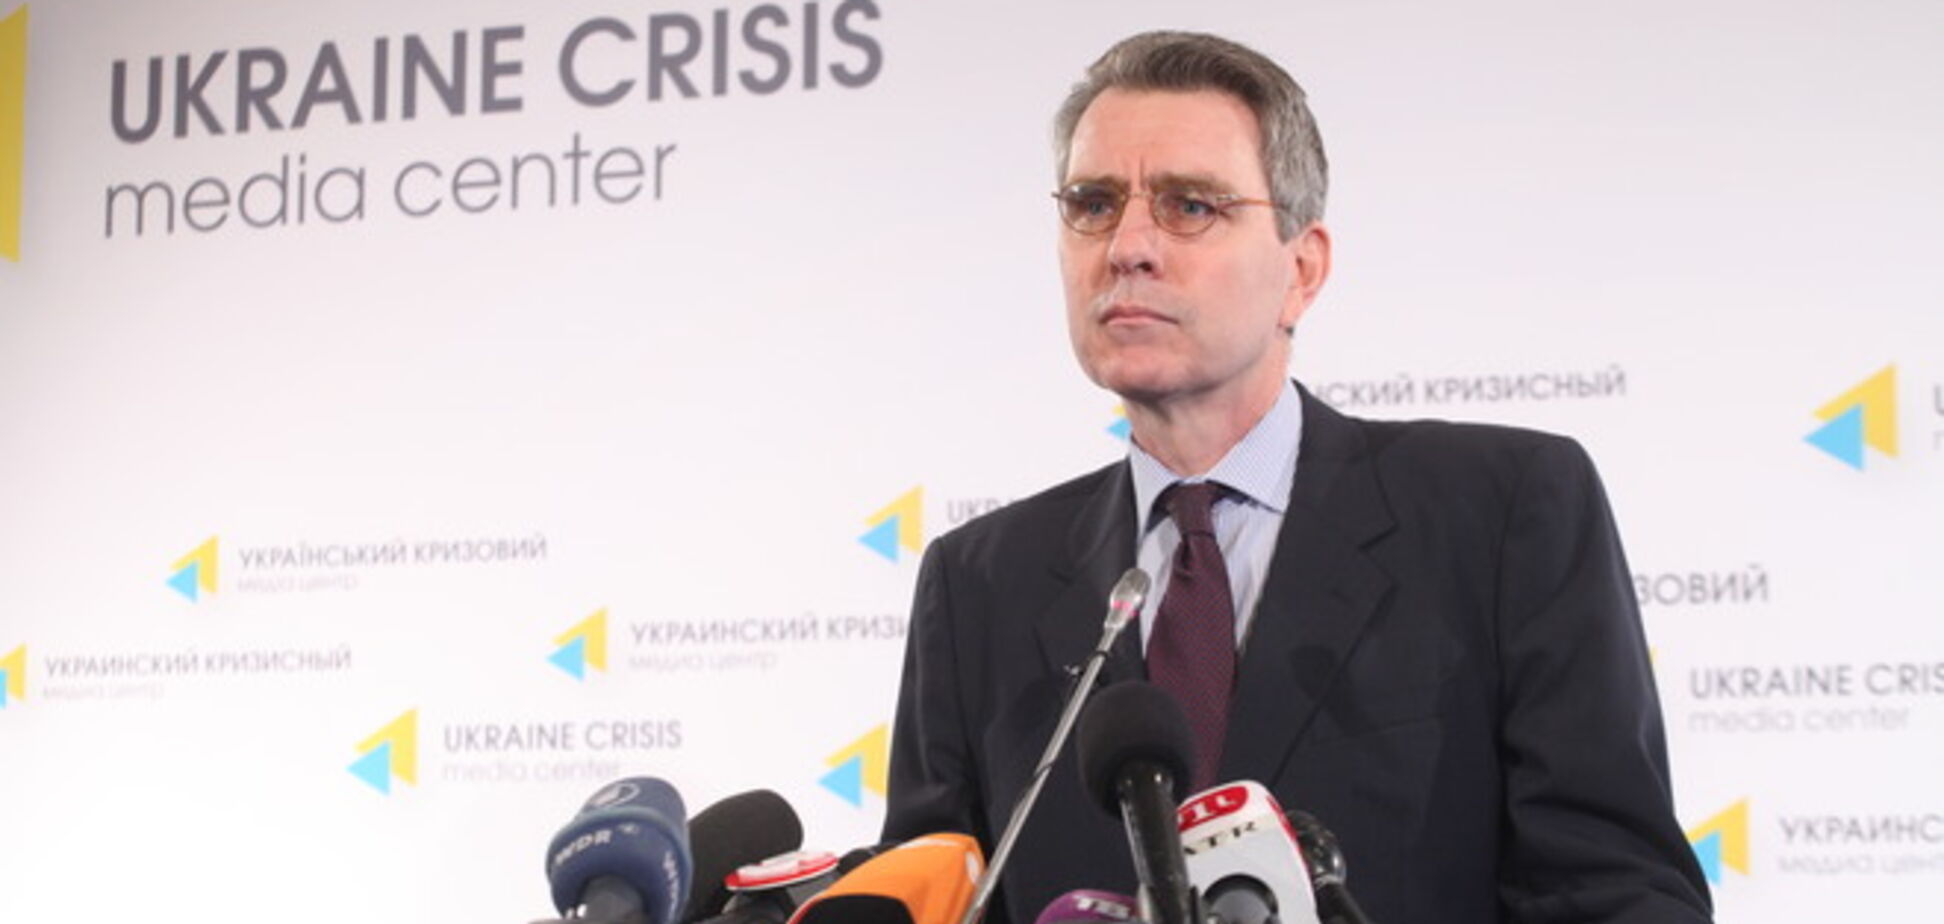 Санкції проти РФ допомогли провести вибори в Україні - посол США в Україні